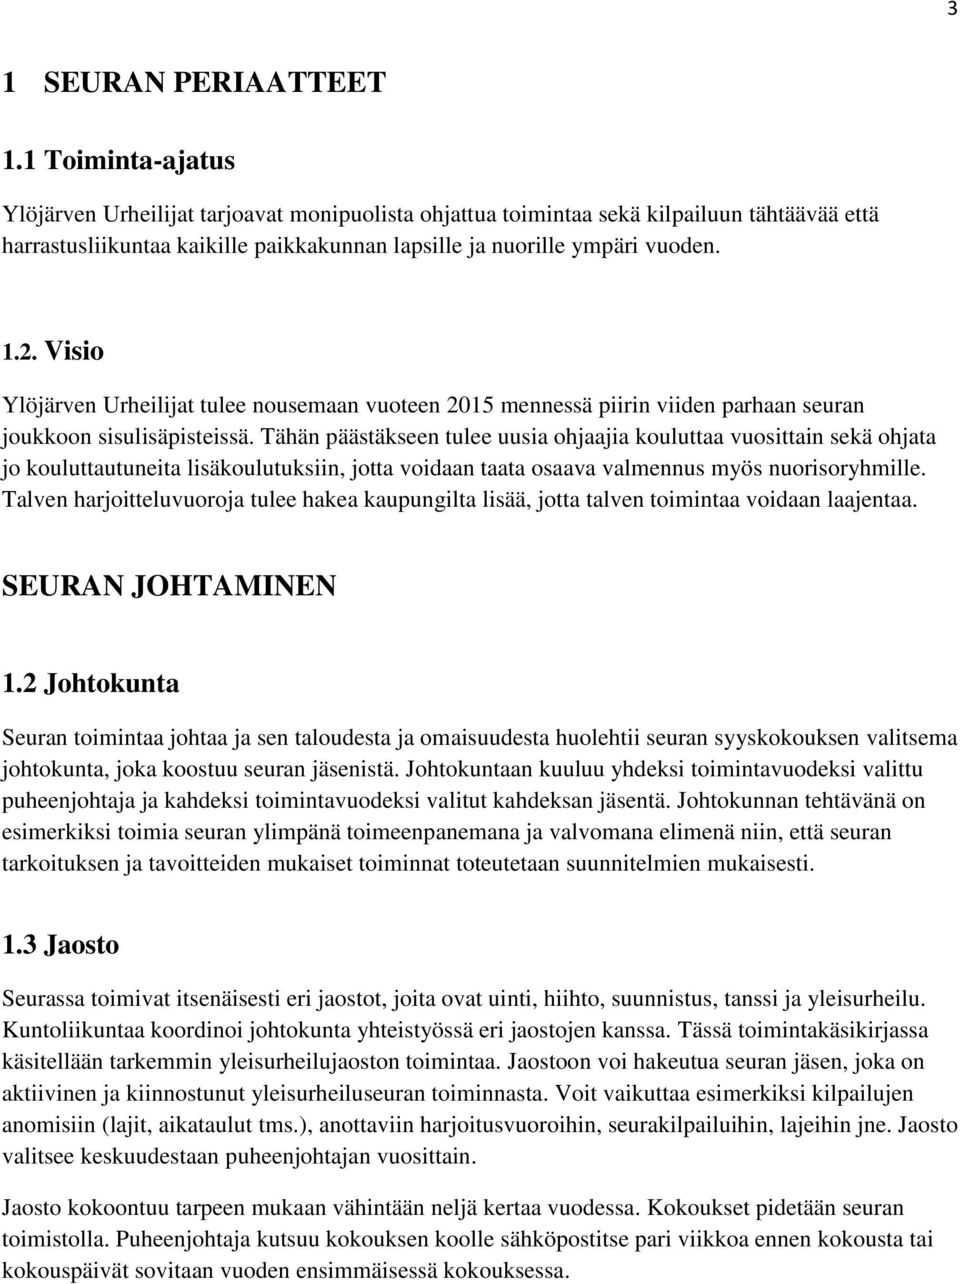 Visio Ylöjärven Urheilijat tulee nousemaan vuoteen 2015 mennessä piirin viiden parhaan seuran joukkoon sisulisäpisteissä.